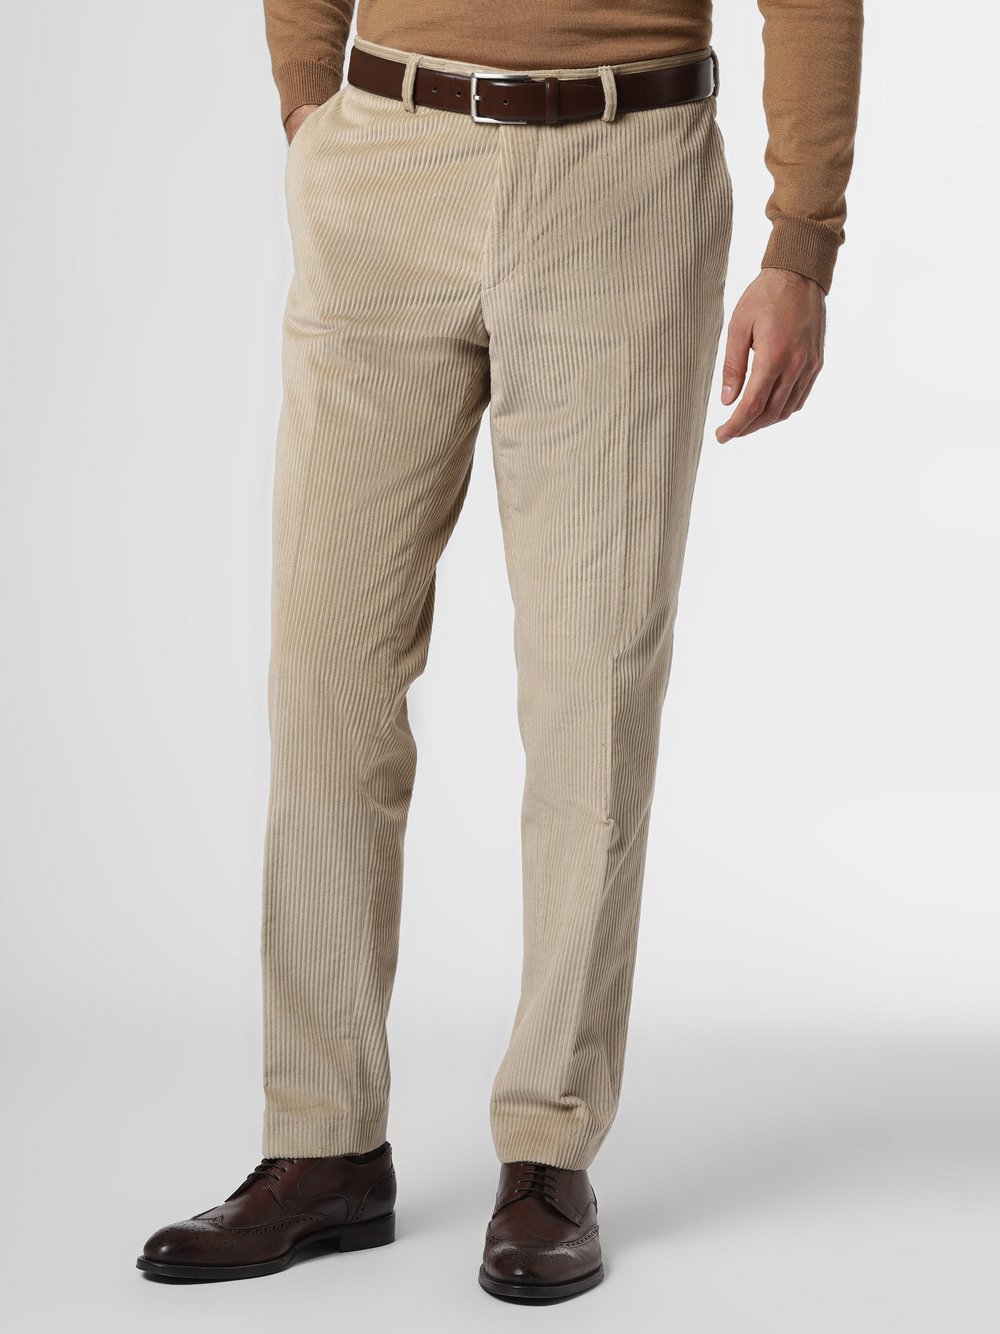 Andrew James New York - Męskie spodnie od garnituru modułowego – Carter, beżowy